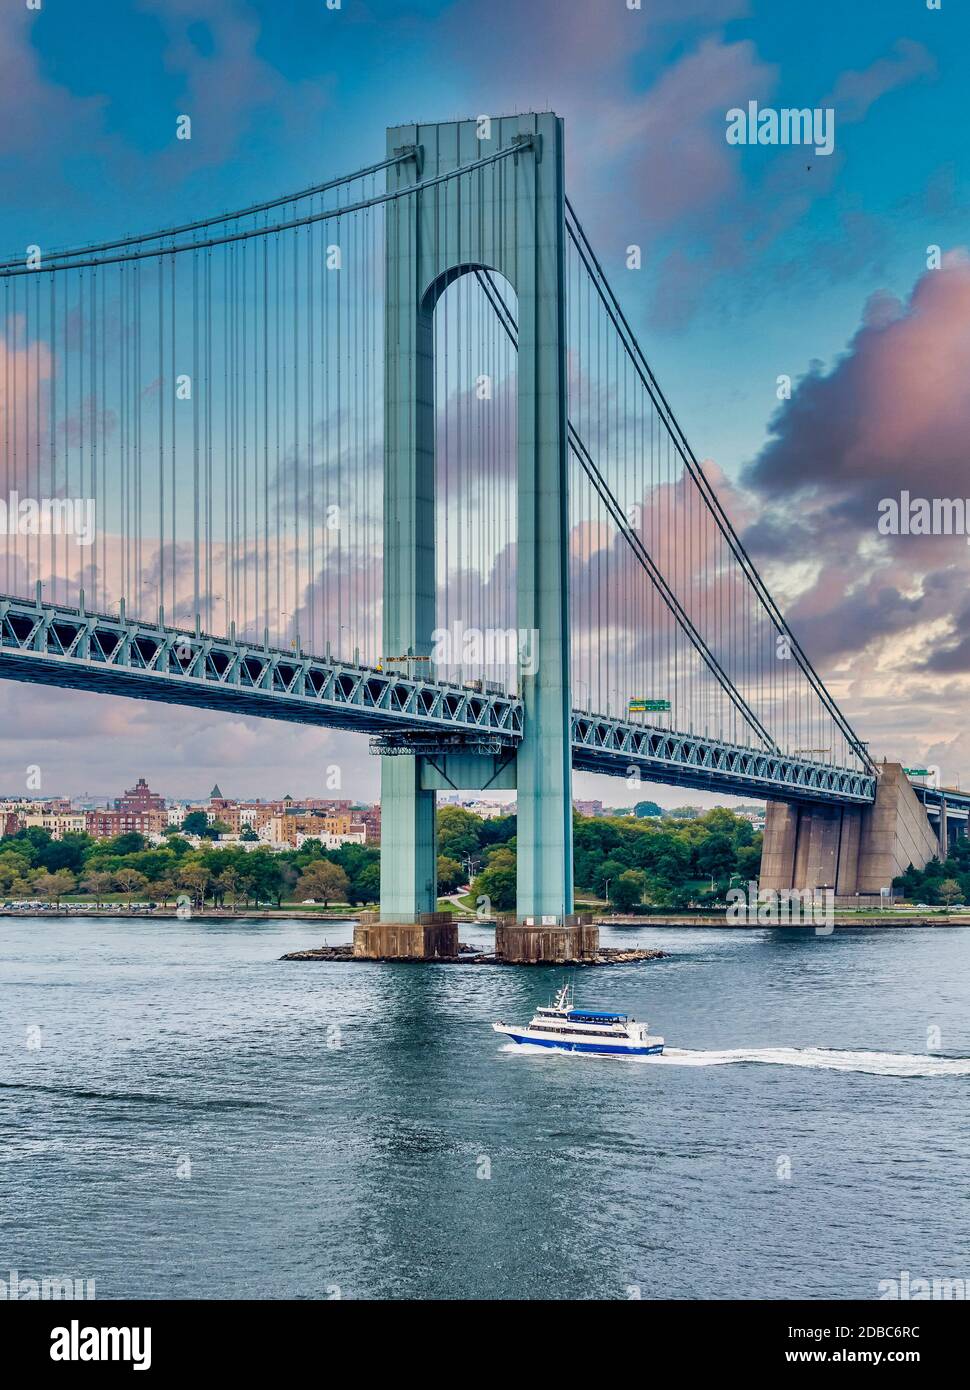 NEW YORK, NEW YORK - 31 agosto 2013: Il ponte Verrazzano è un ponte sospeso che collega Staten Island a Brooklyn. Il ponte porta sete Foto Stock